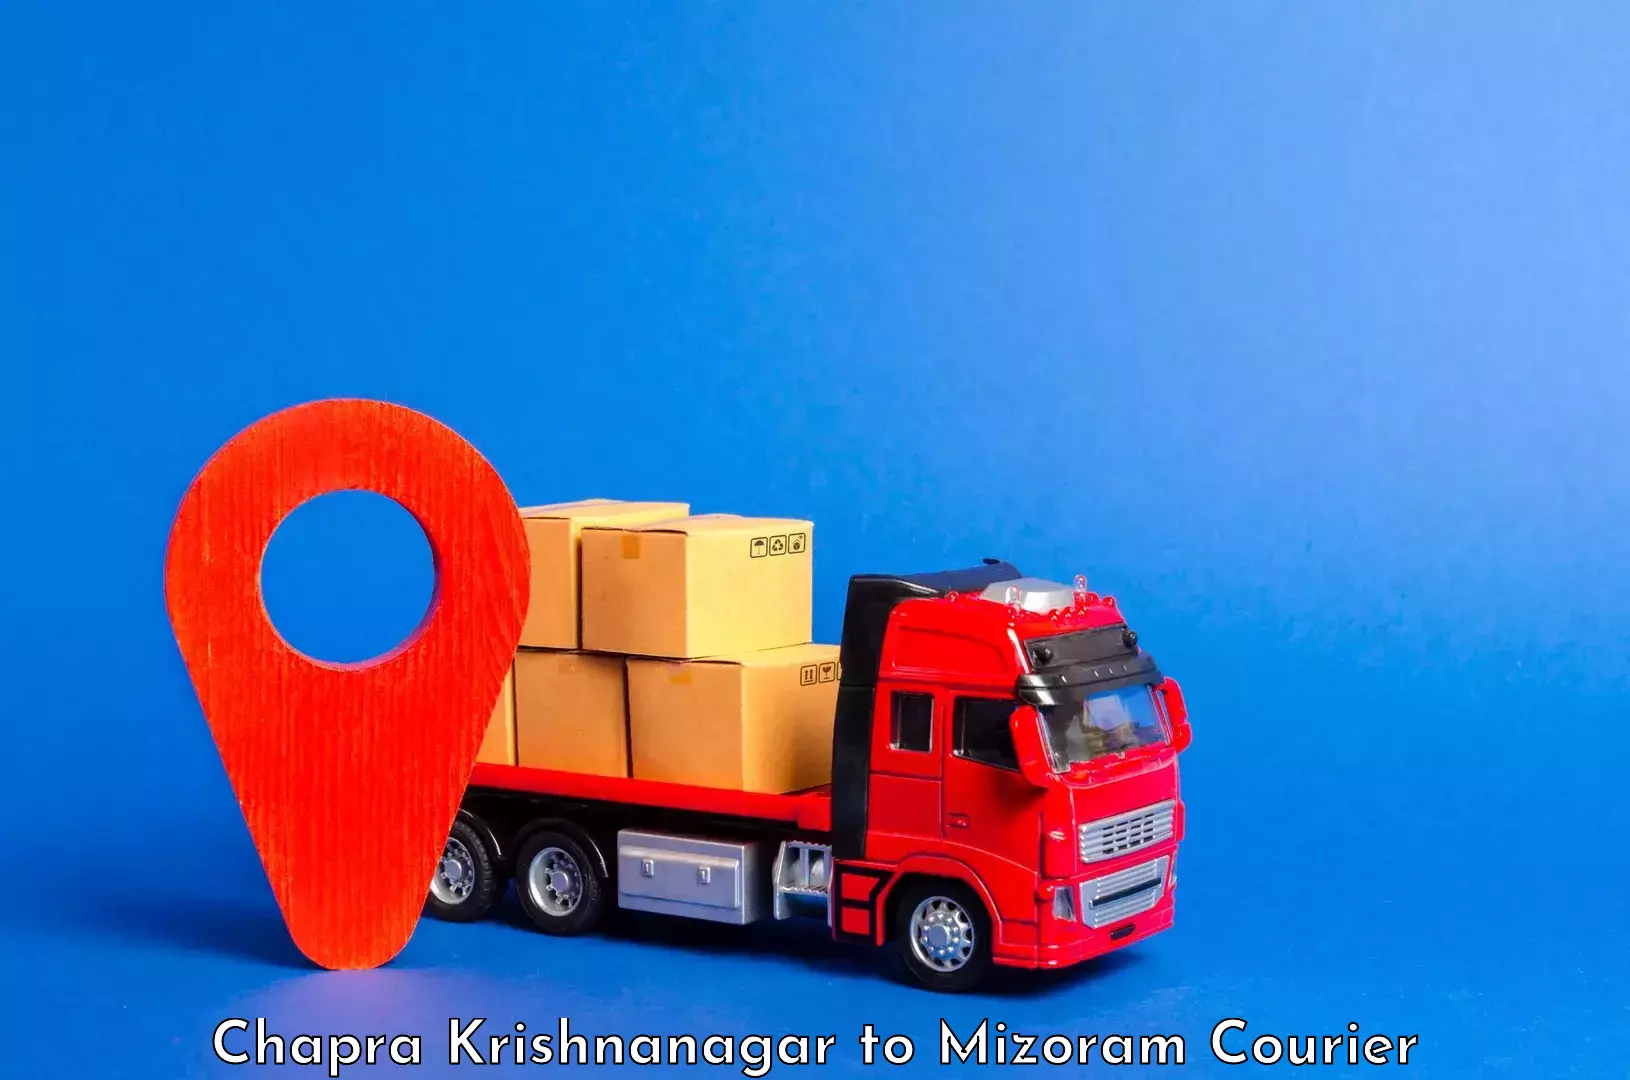 Luggage delivery estimate Chapra Krishnanagar to Aizawl